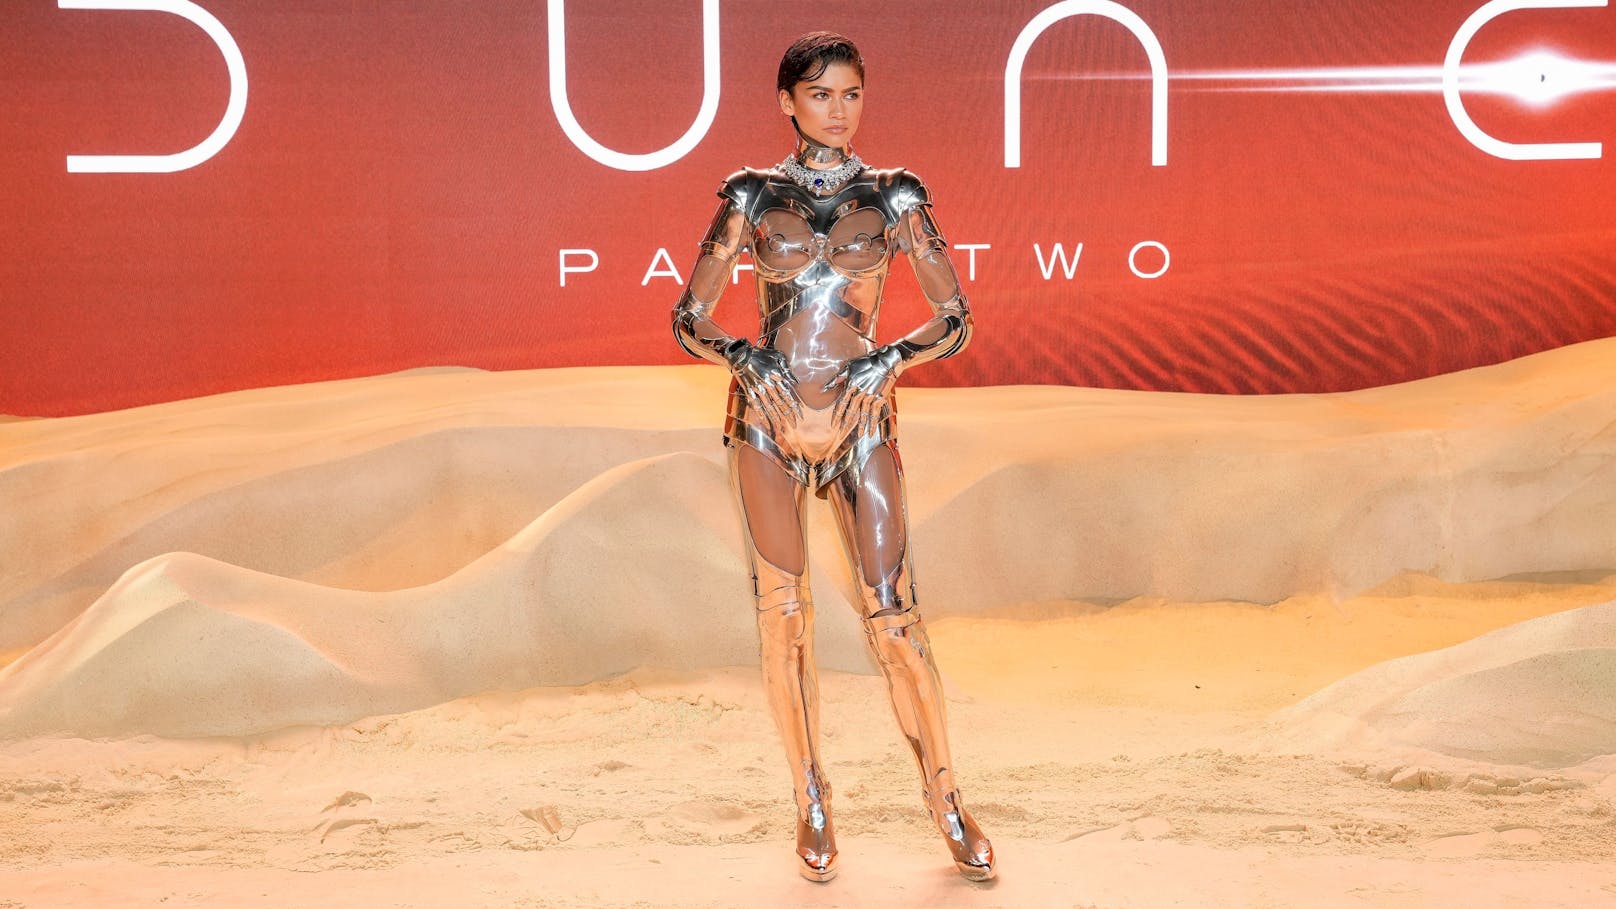 Zur Premiere in London erschien Zendaya in einem Roboteranzug, der dank Plexiglas an verschiedenen Stellen durchsichtig war.